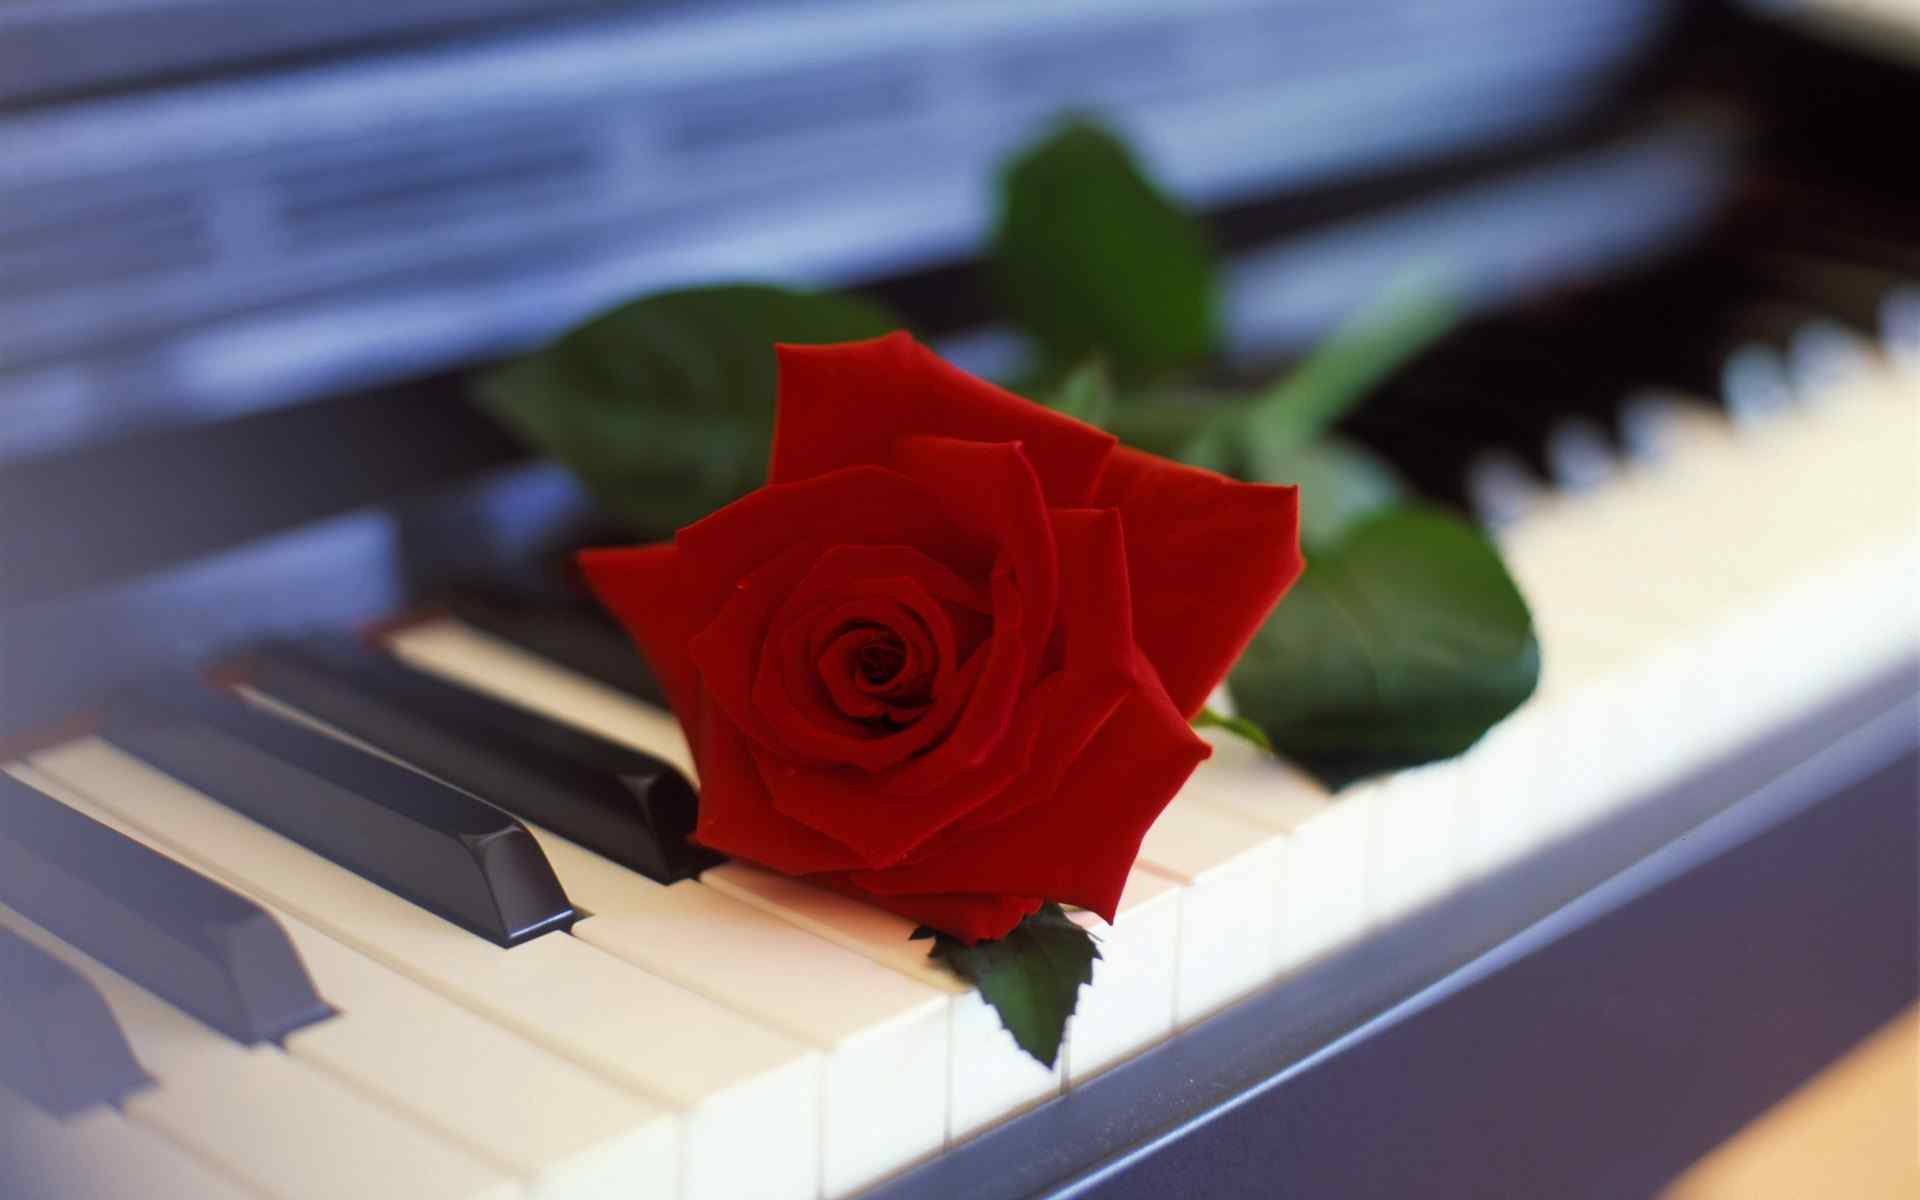 钢琴上的一朵红色玫瑰花图片桌面壁纸